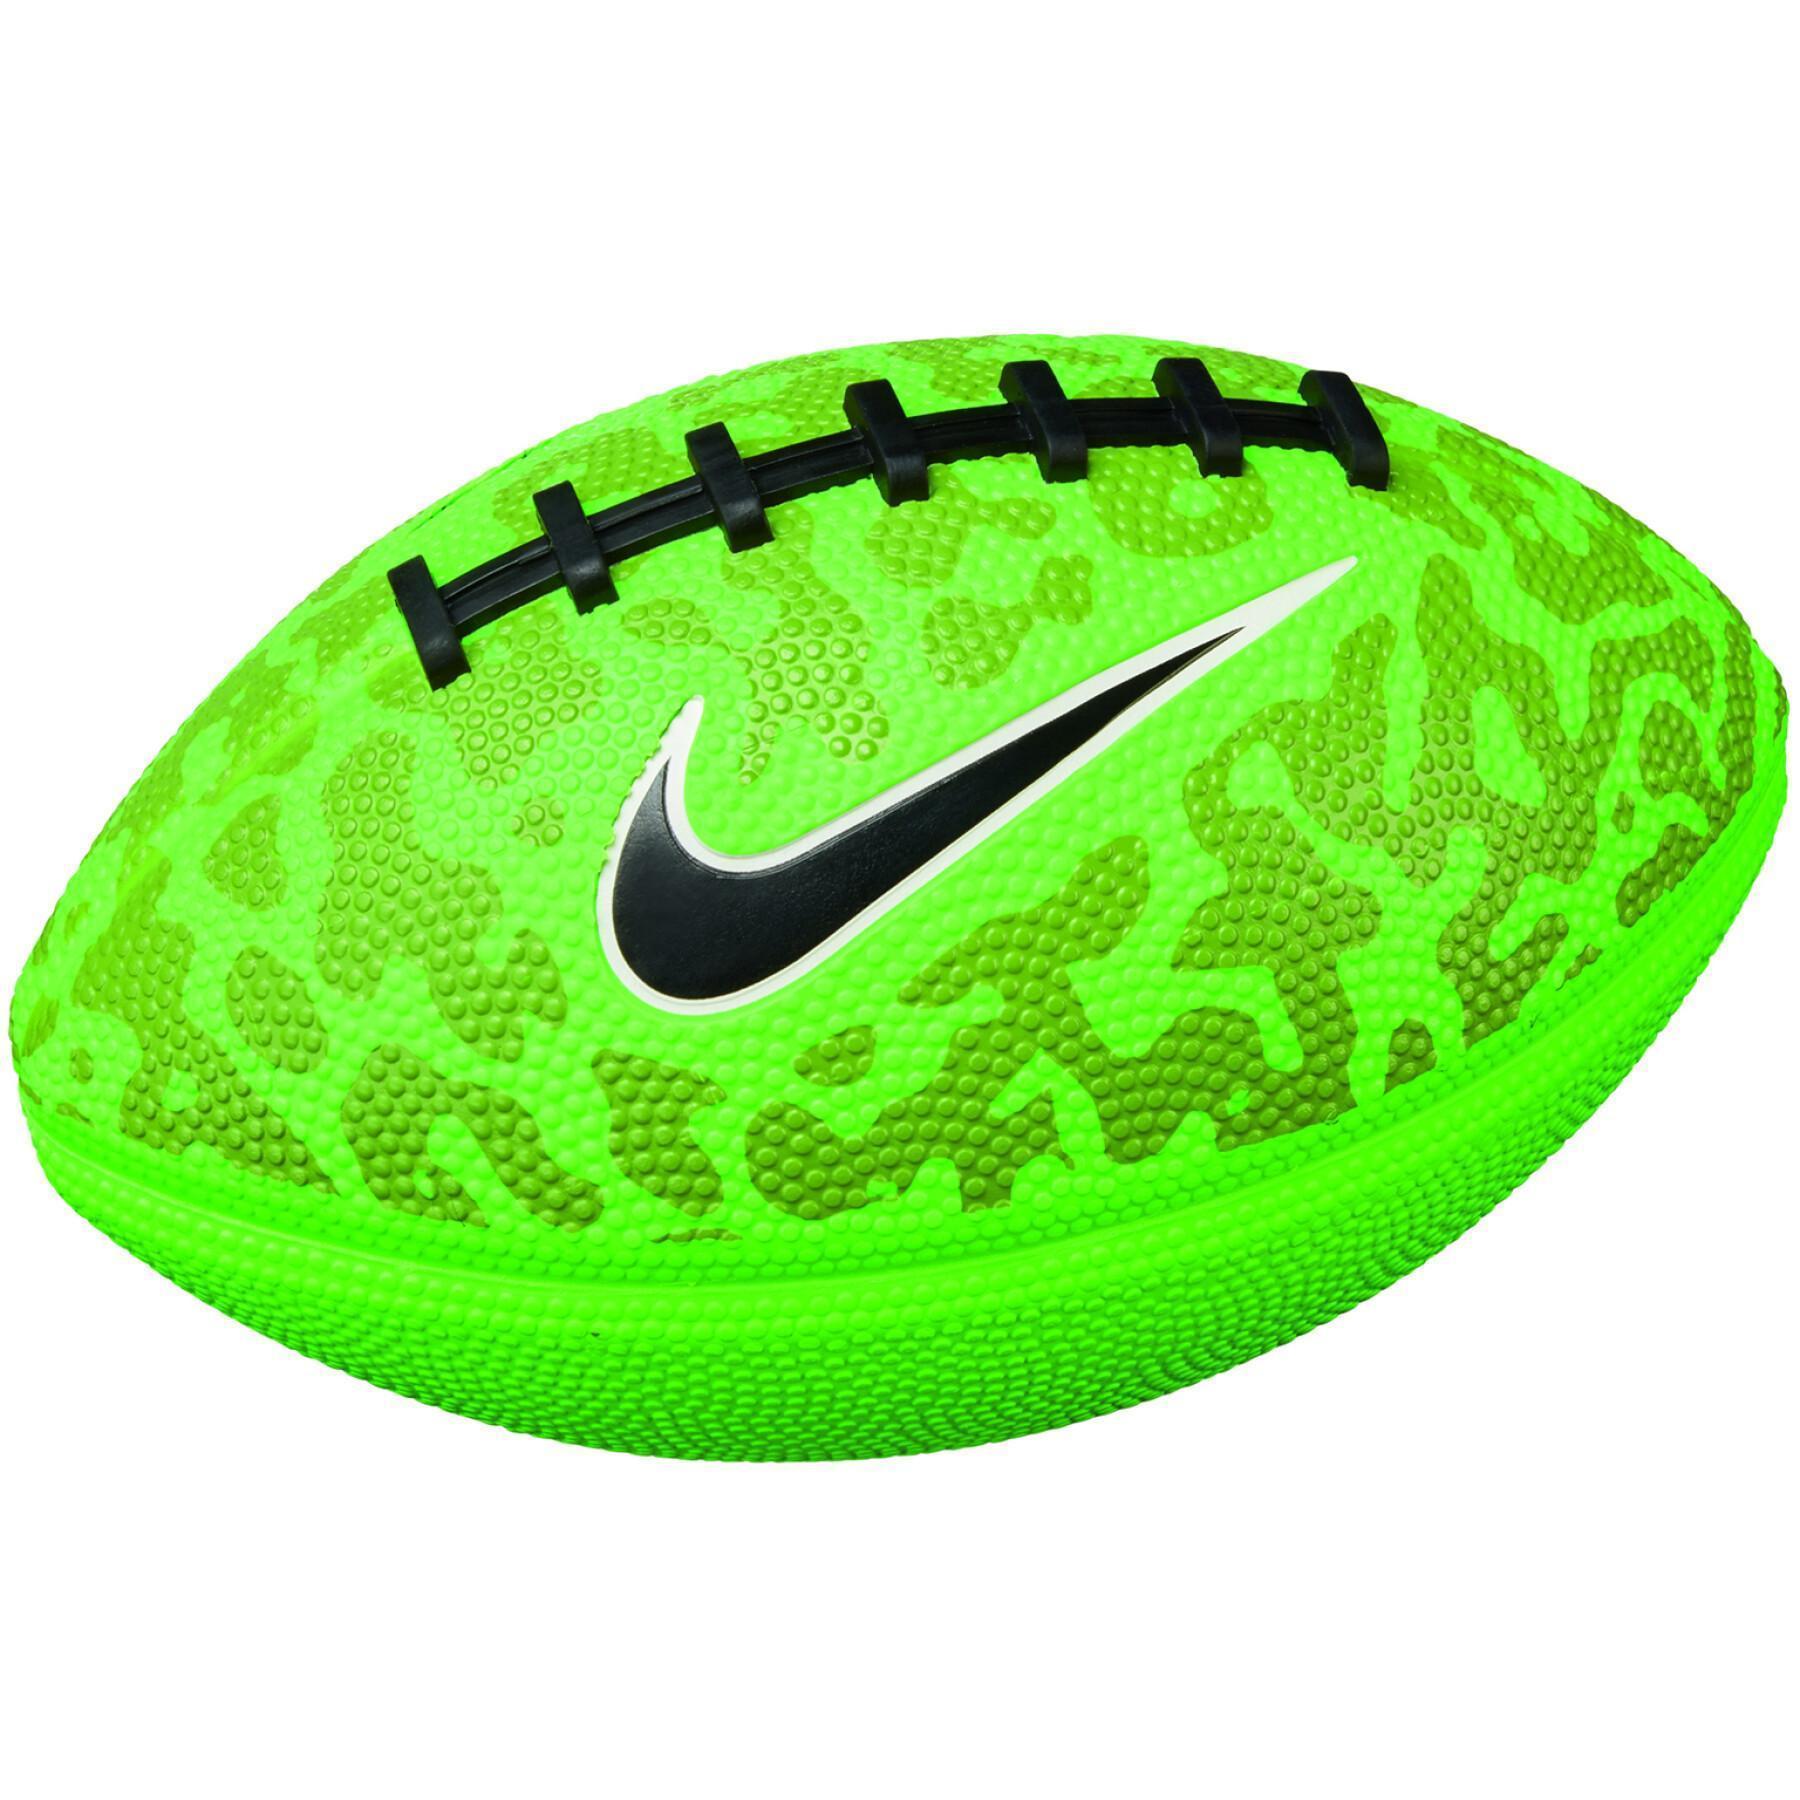 Balon Nike mini spin 4.0 fb